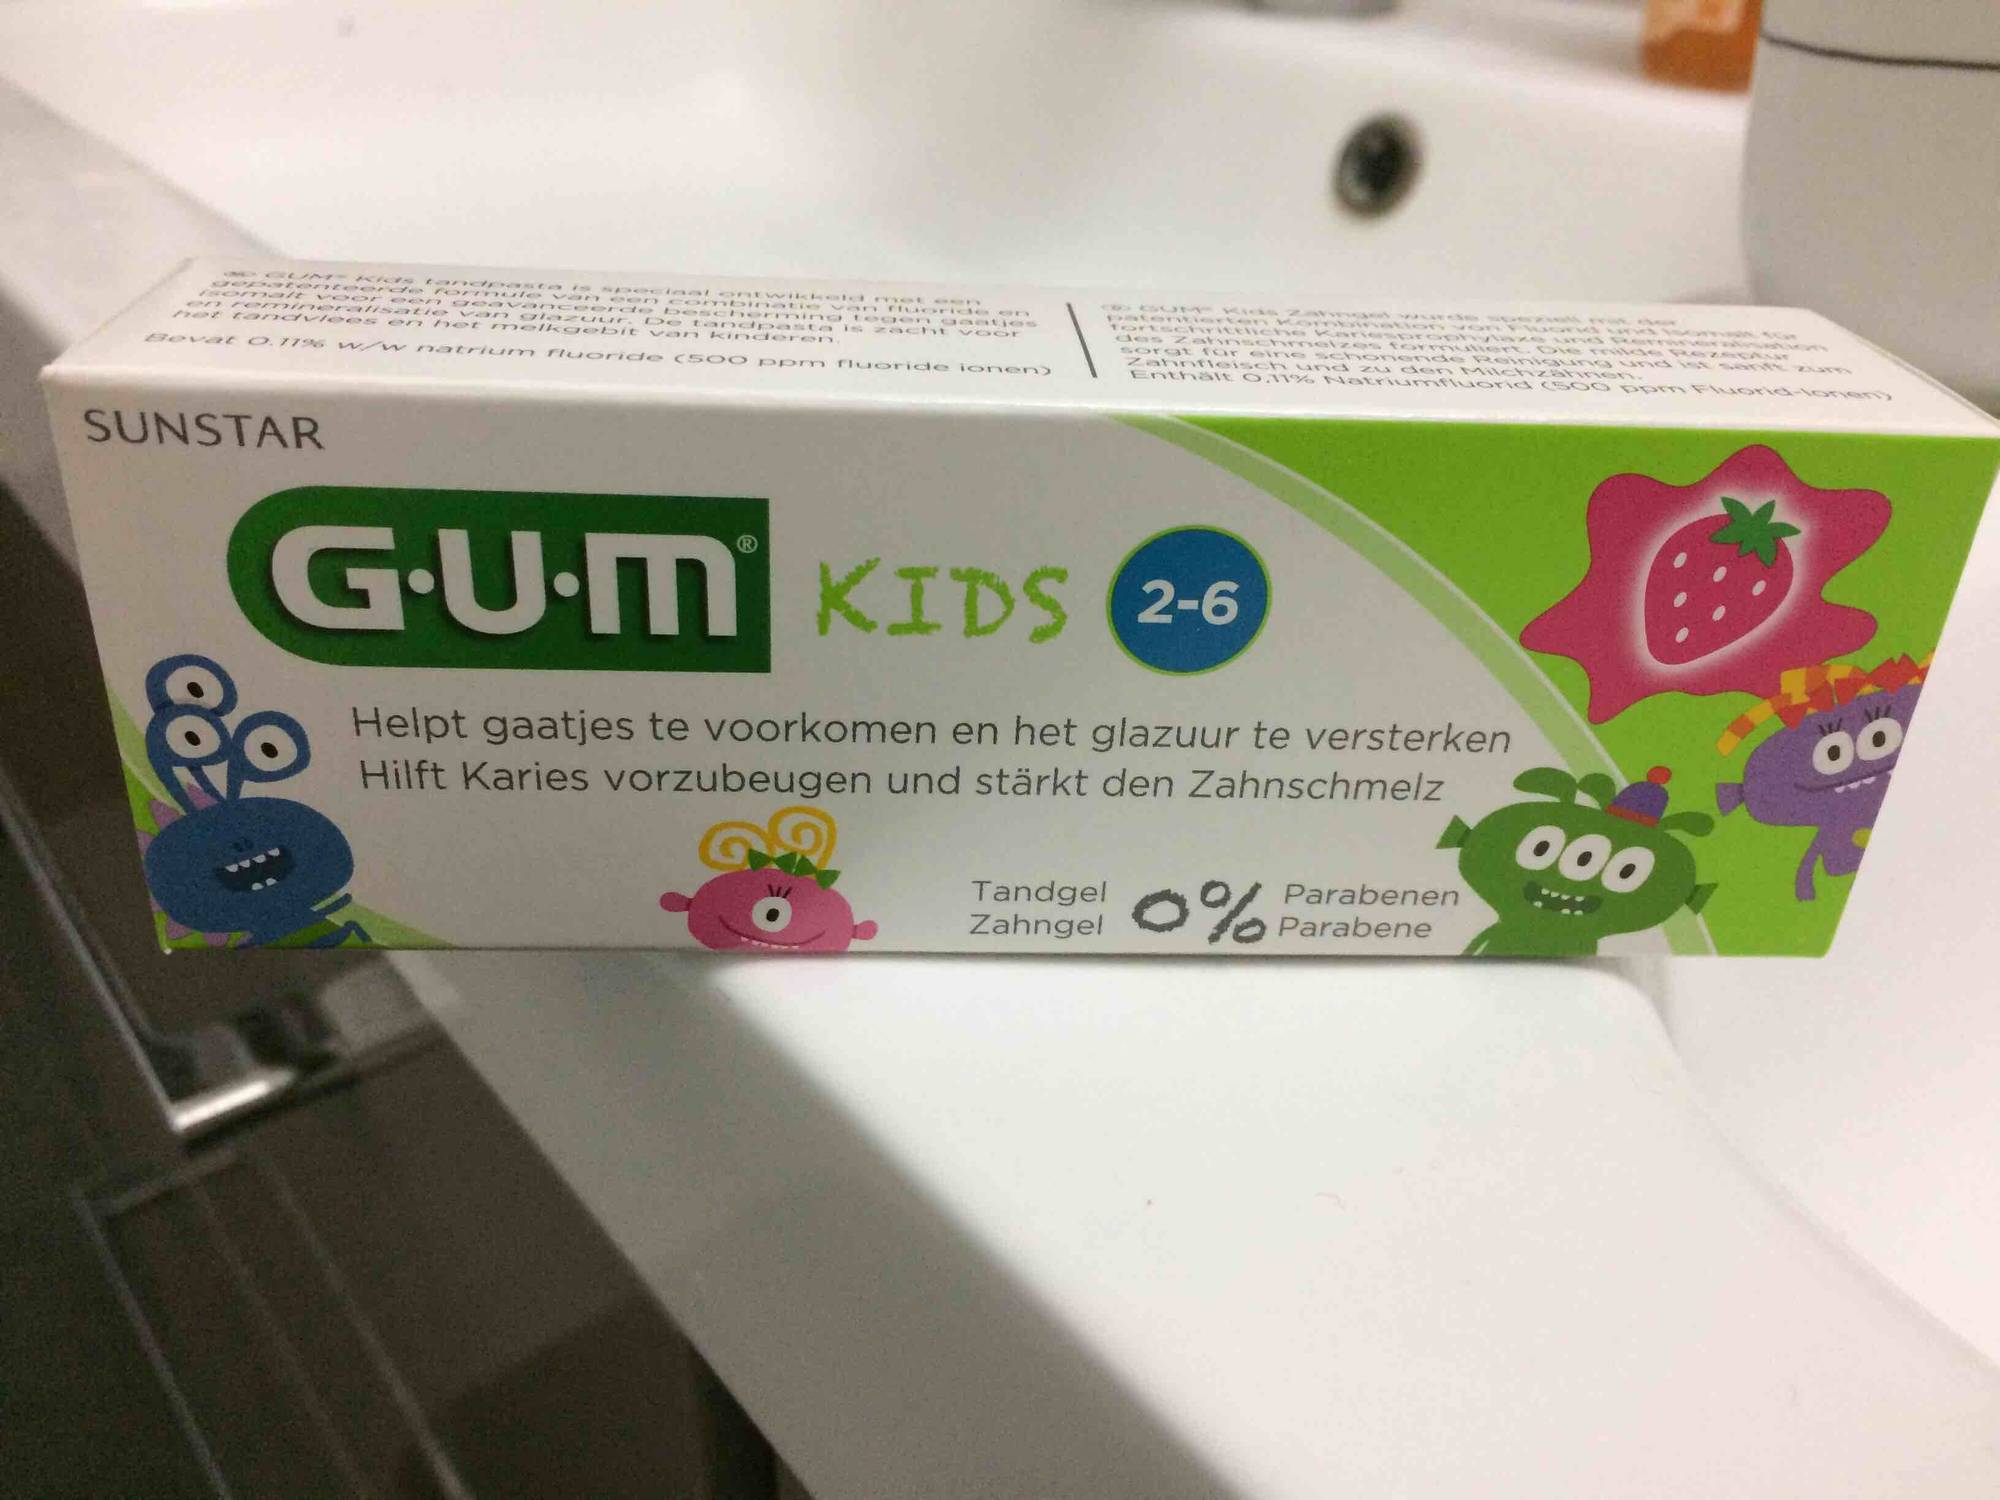 SUNSTAR - Dentifrice Gum kids